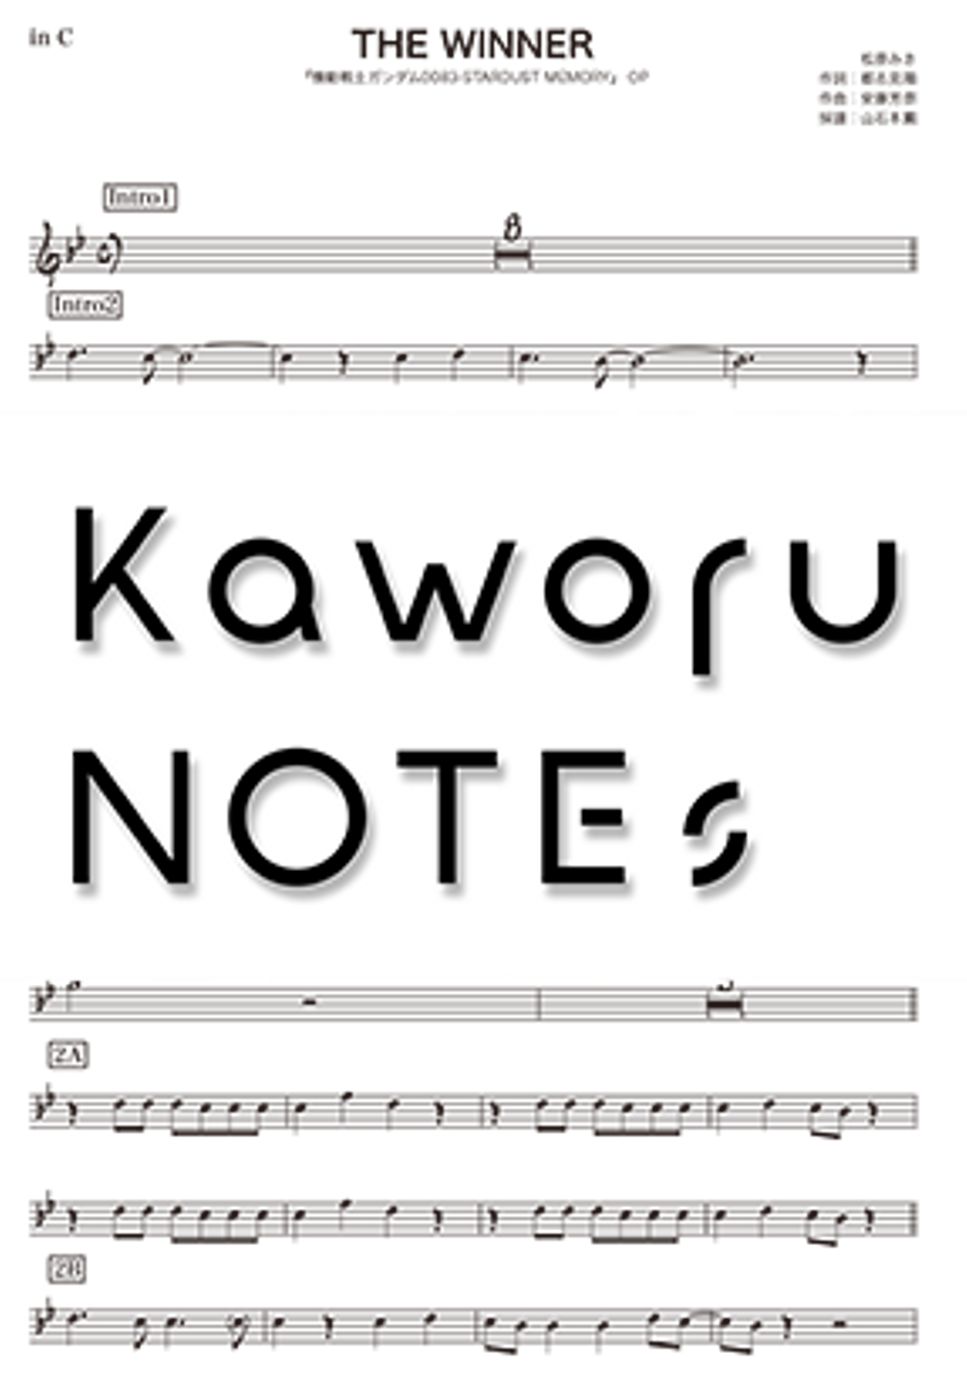 松原みき - THE WINNER（in B♭/『機動戦士ガンダム0083-STARDUST MEMORY』） by Kaworu NOTEs